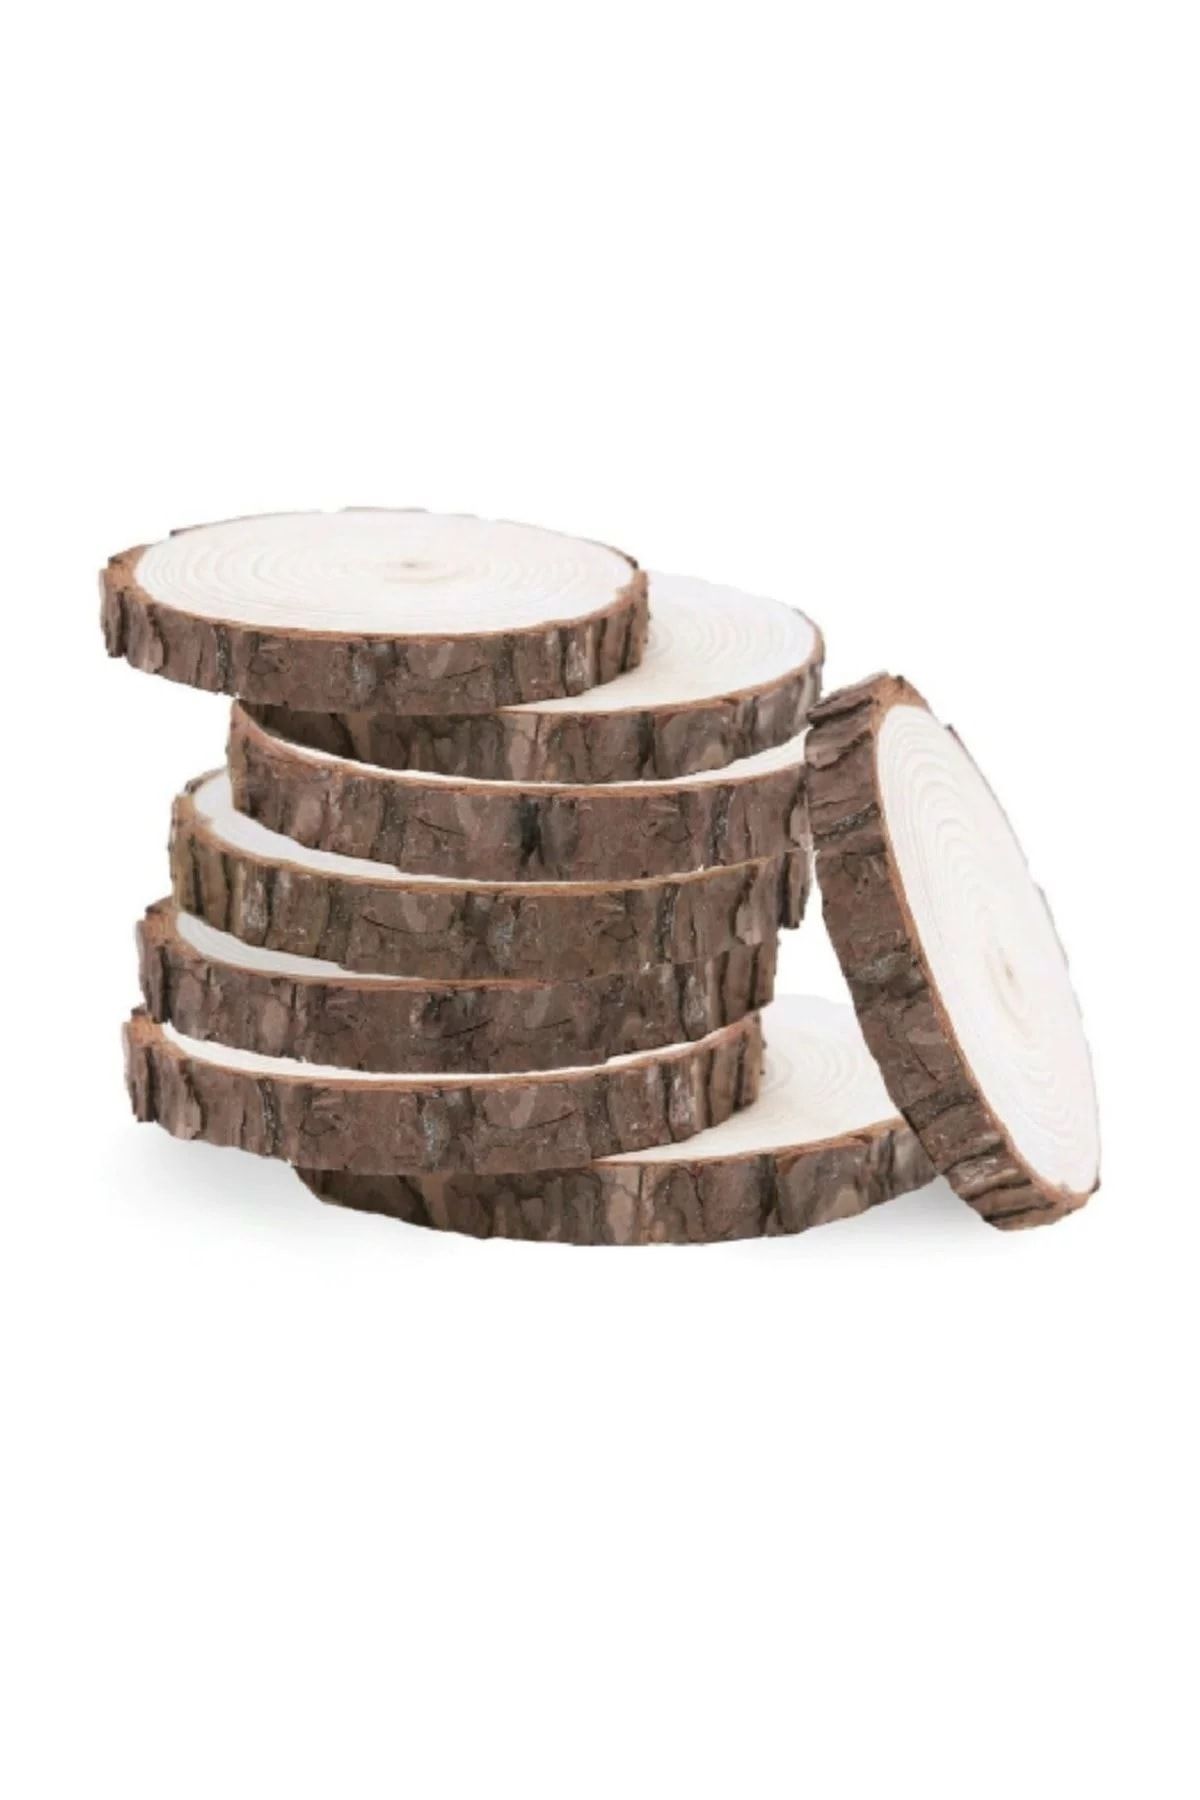 Genel Markalar Doğal Ahşap Odun Dilimleri Hobi Magnet Süsleme Ahşap Boyama 5-7 Cm Boyutlarında 50'li Paket